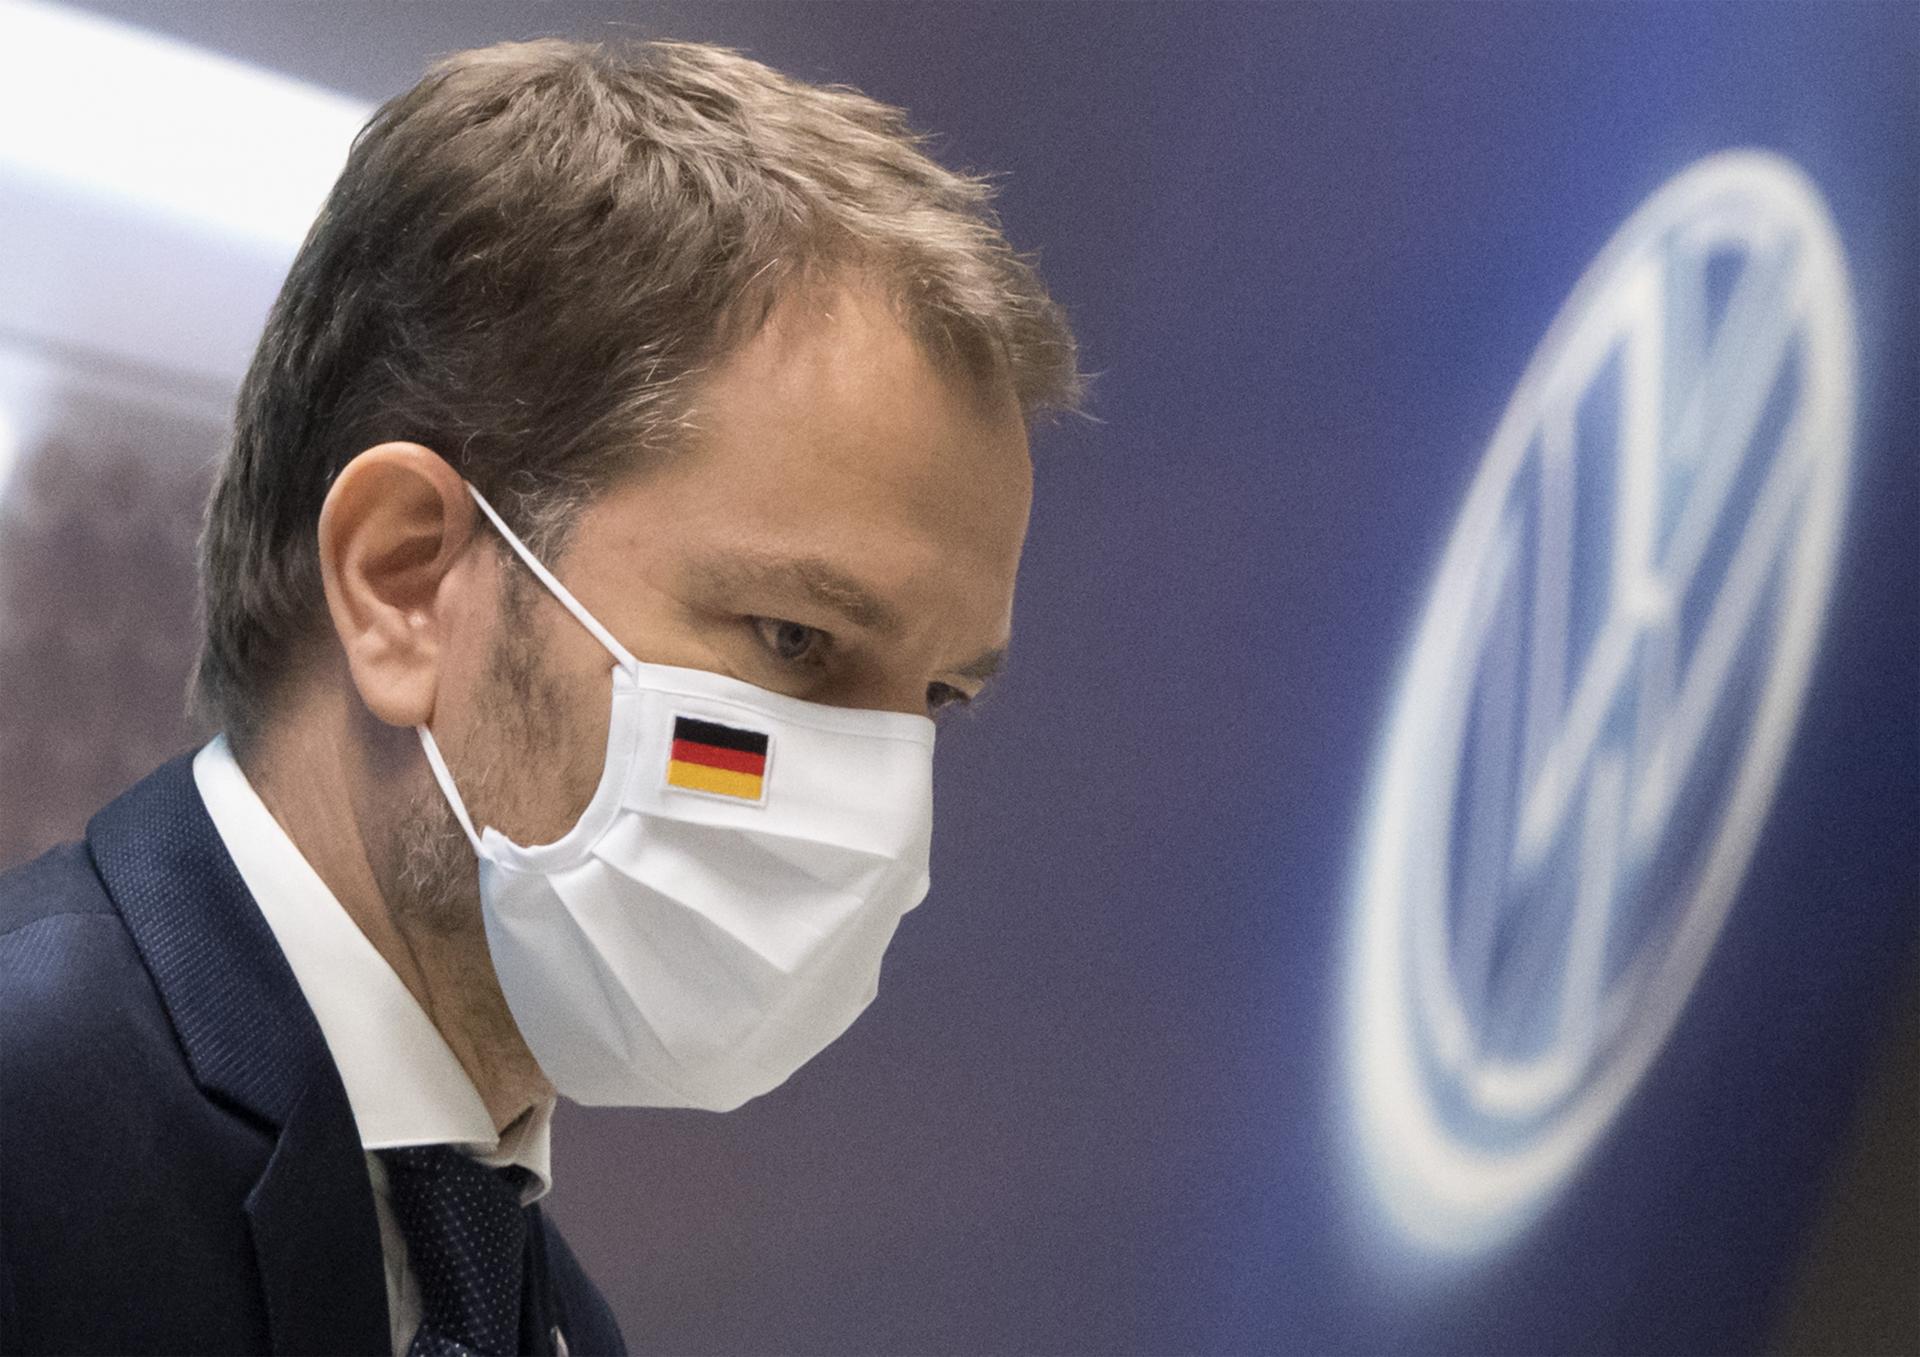 Zistenie HN: Volkswagen má pre multimiliardovú investíciu v hľadáčiku Slovensko. Rieši pri nej detaily